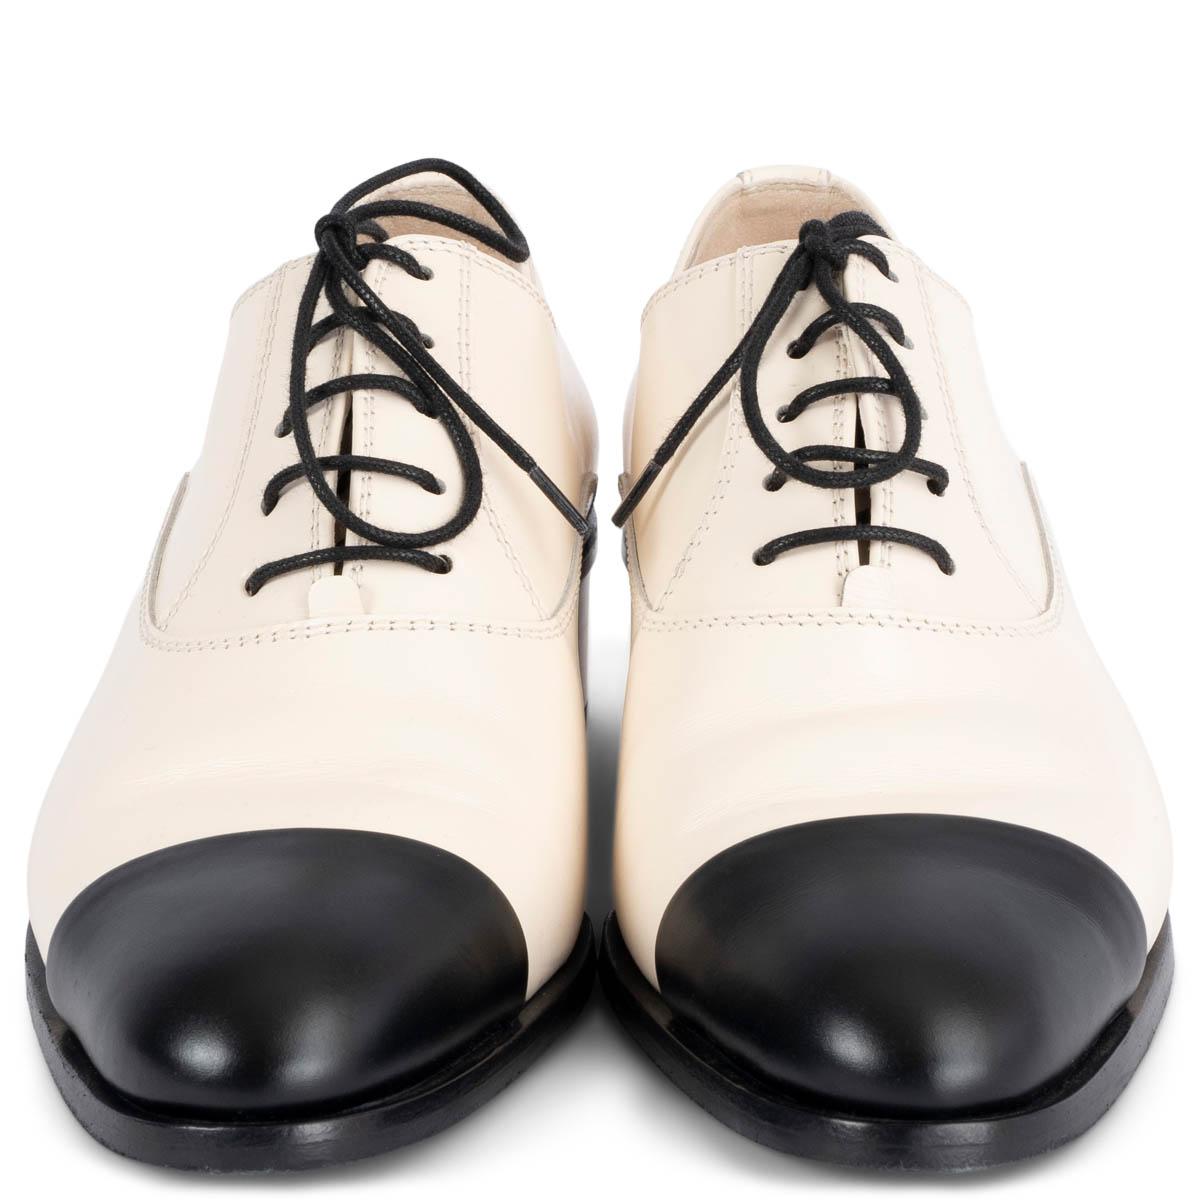 Derbies à lacet en cuir lisse ivoire, 100% authentiques Chanel 2022, avec bout pointu noir classique. Ils ont été portés une fois et présentent quelques légères lignes sombres sur le talon et sur le côté de la chaussure droite. En général en